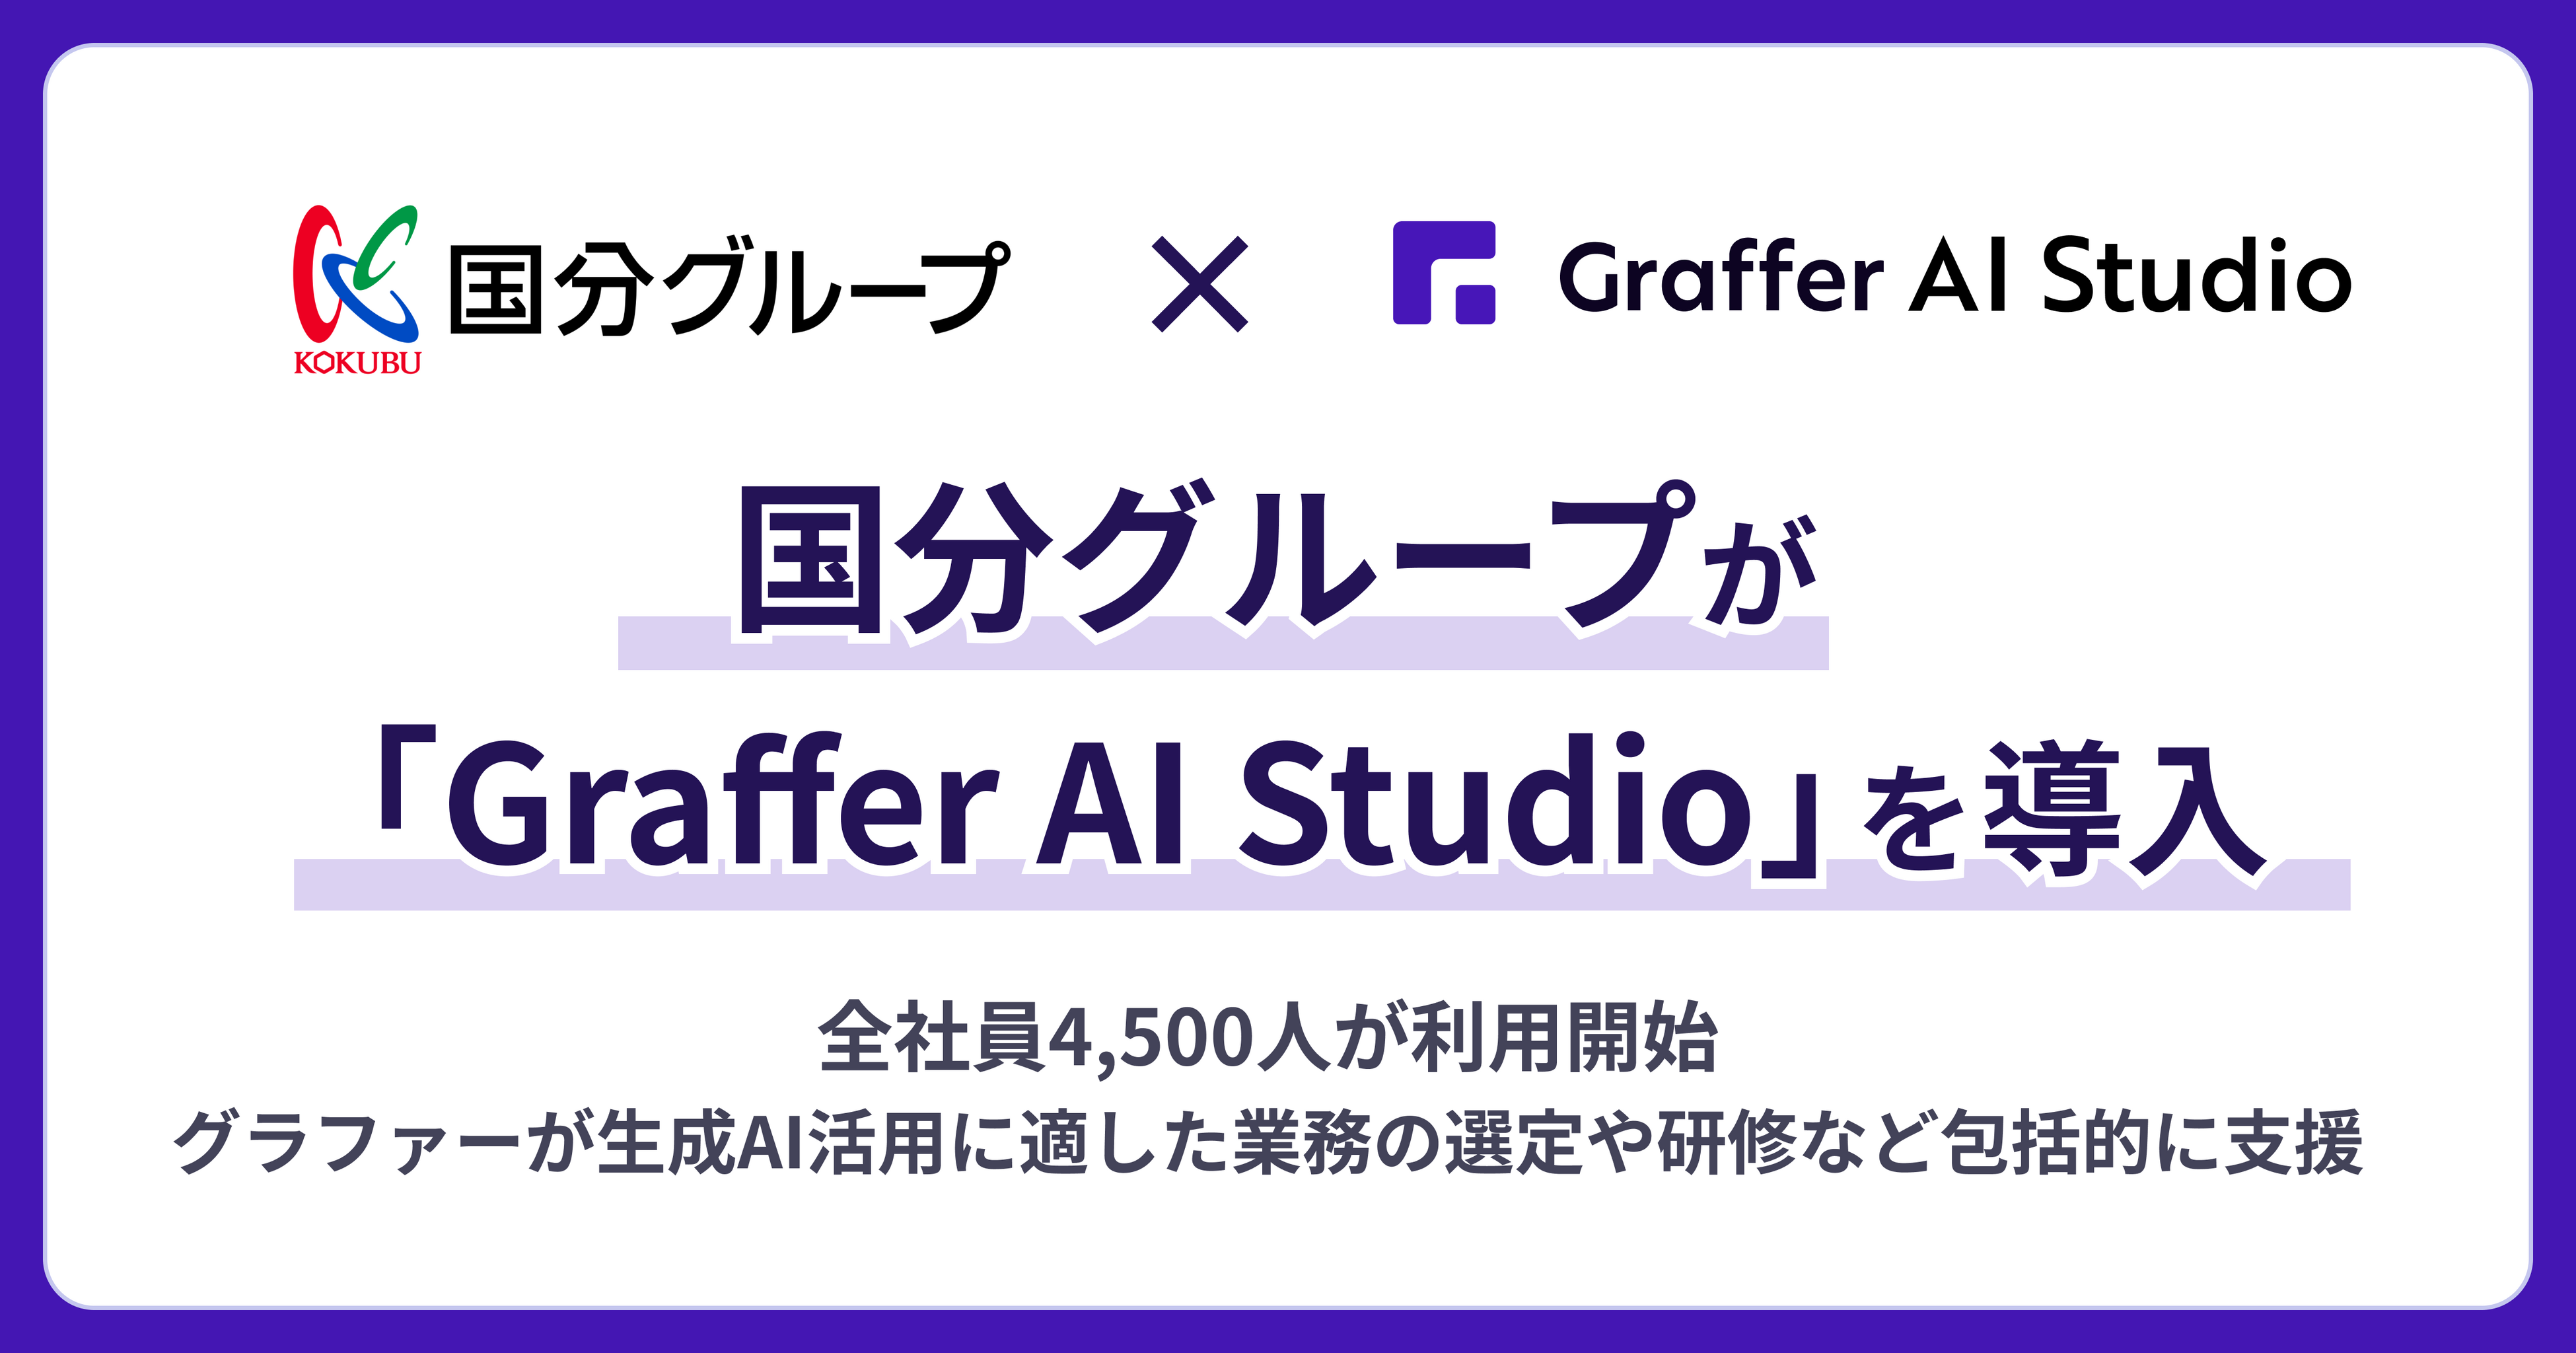 国分グループが「Graffer AI Studio」を導入、全社員4,500人で利用開始